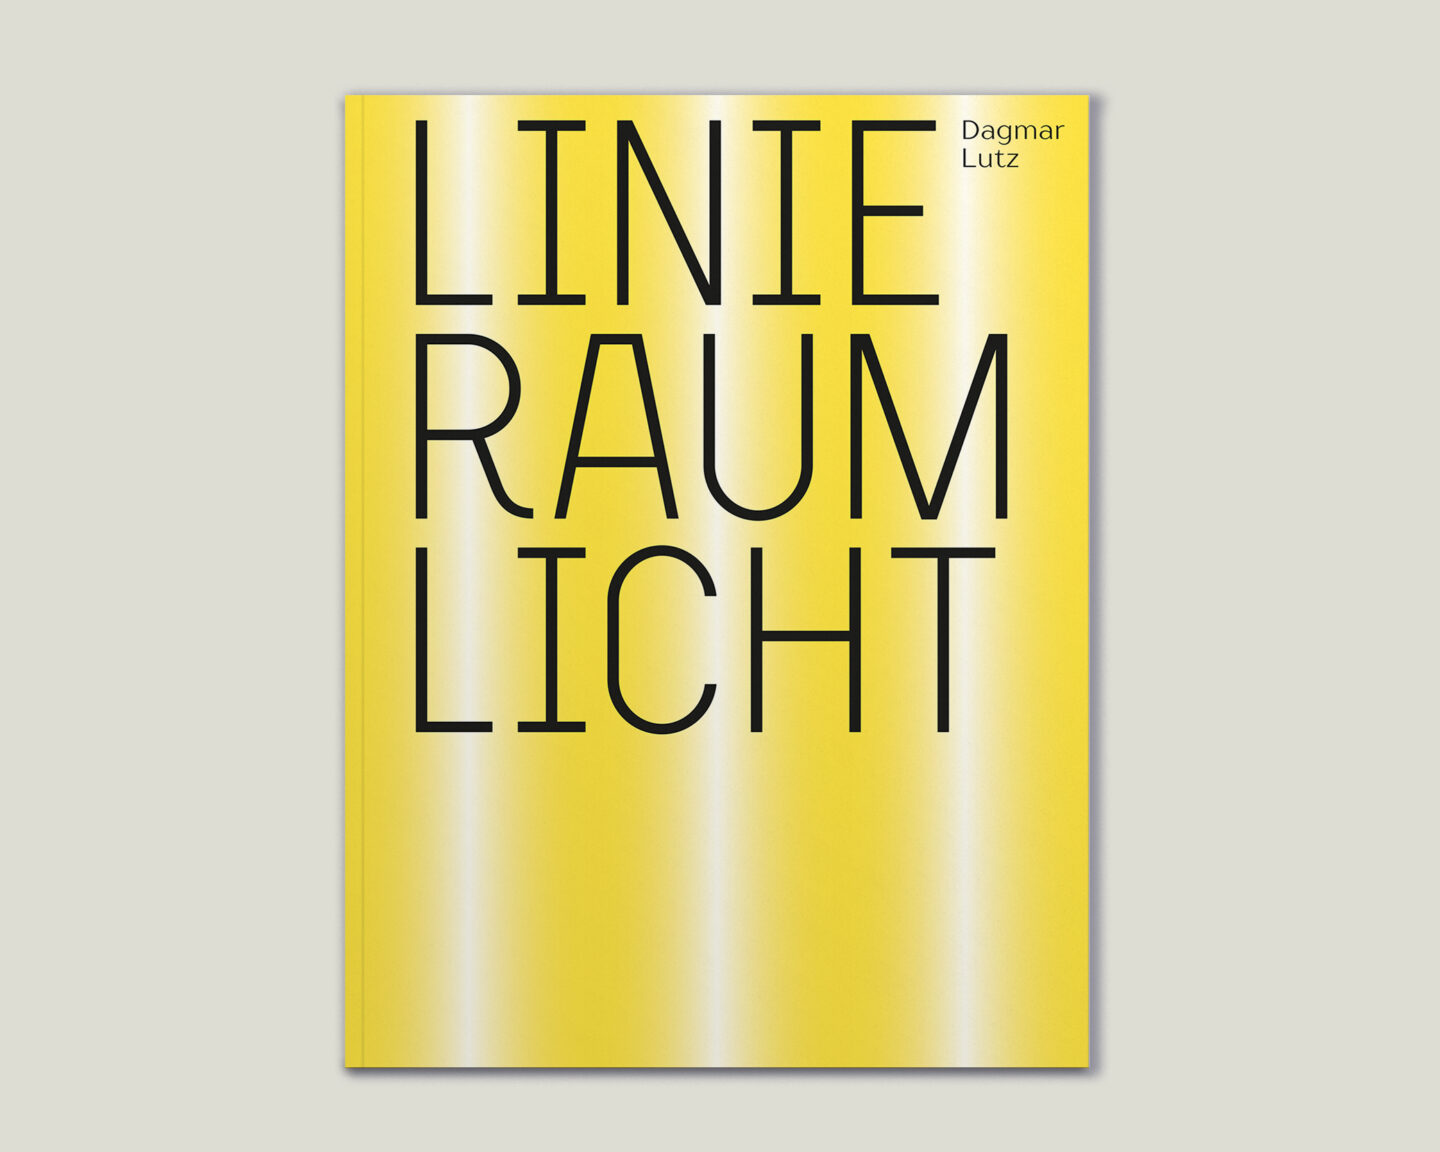 Kunstkatalog für Dagmar Lutz: Linie Raum Licht (Titel)